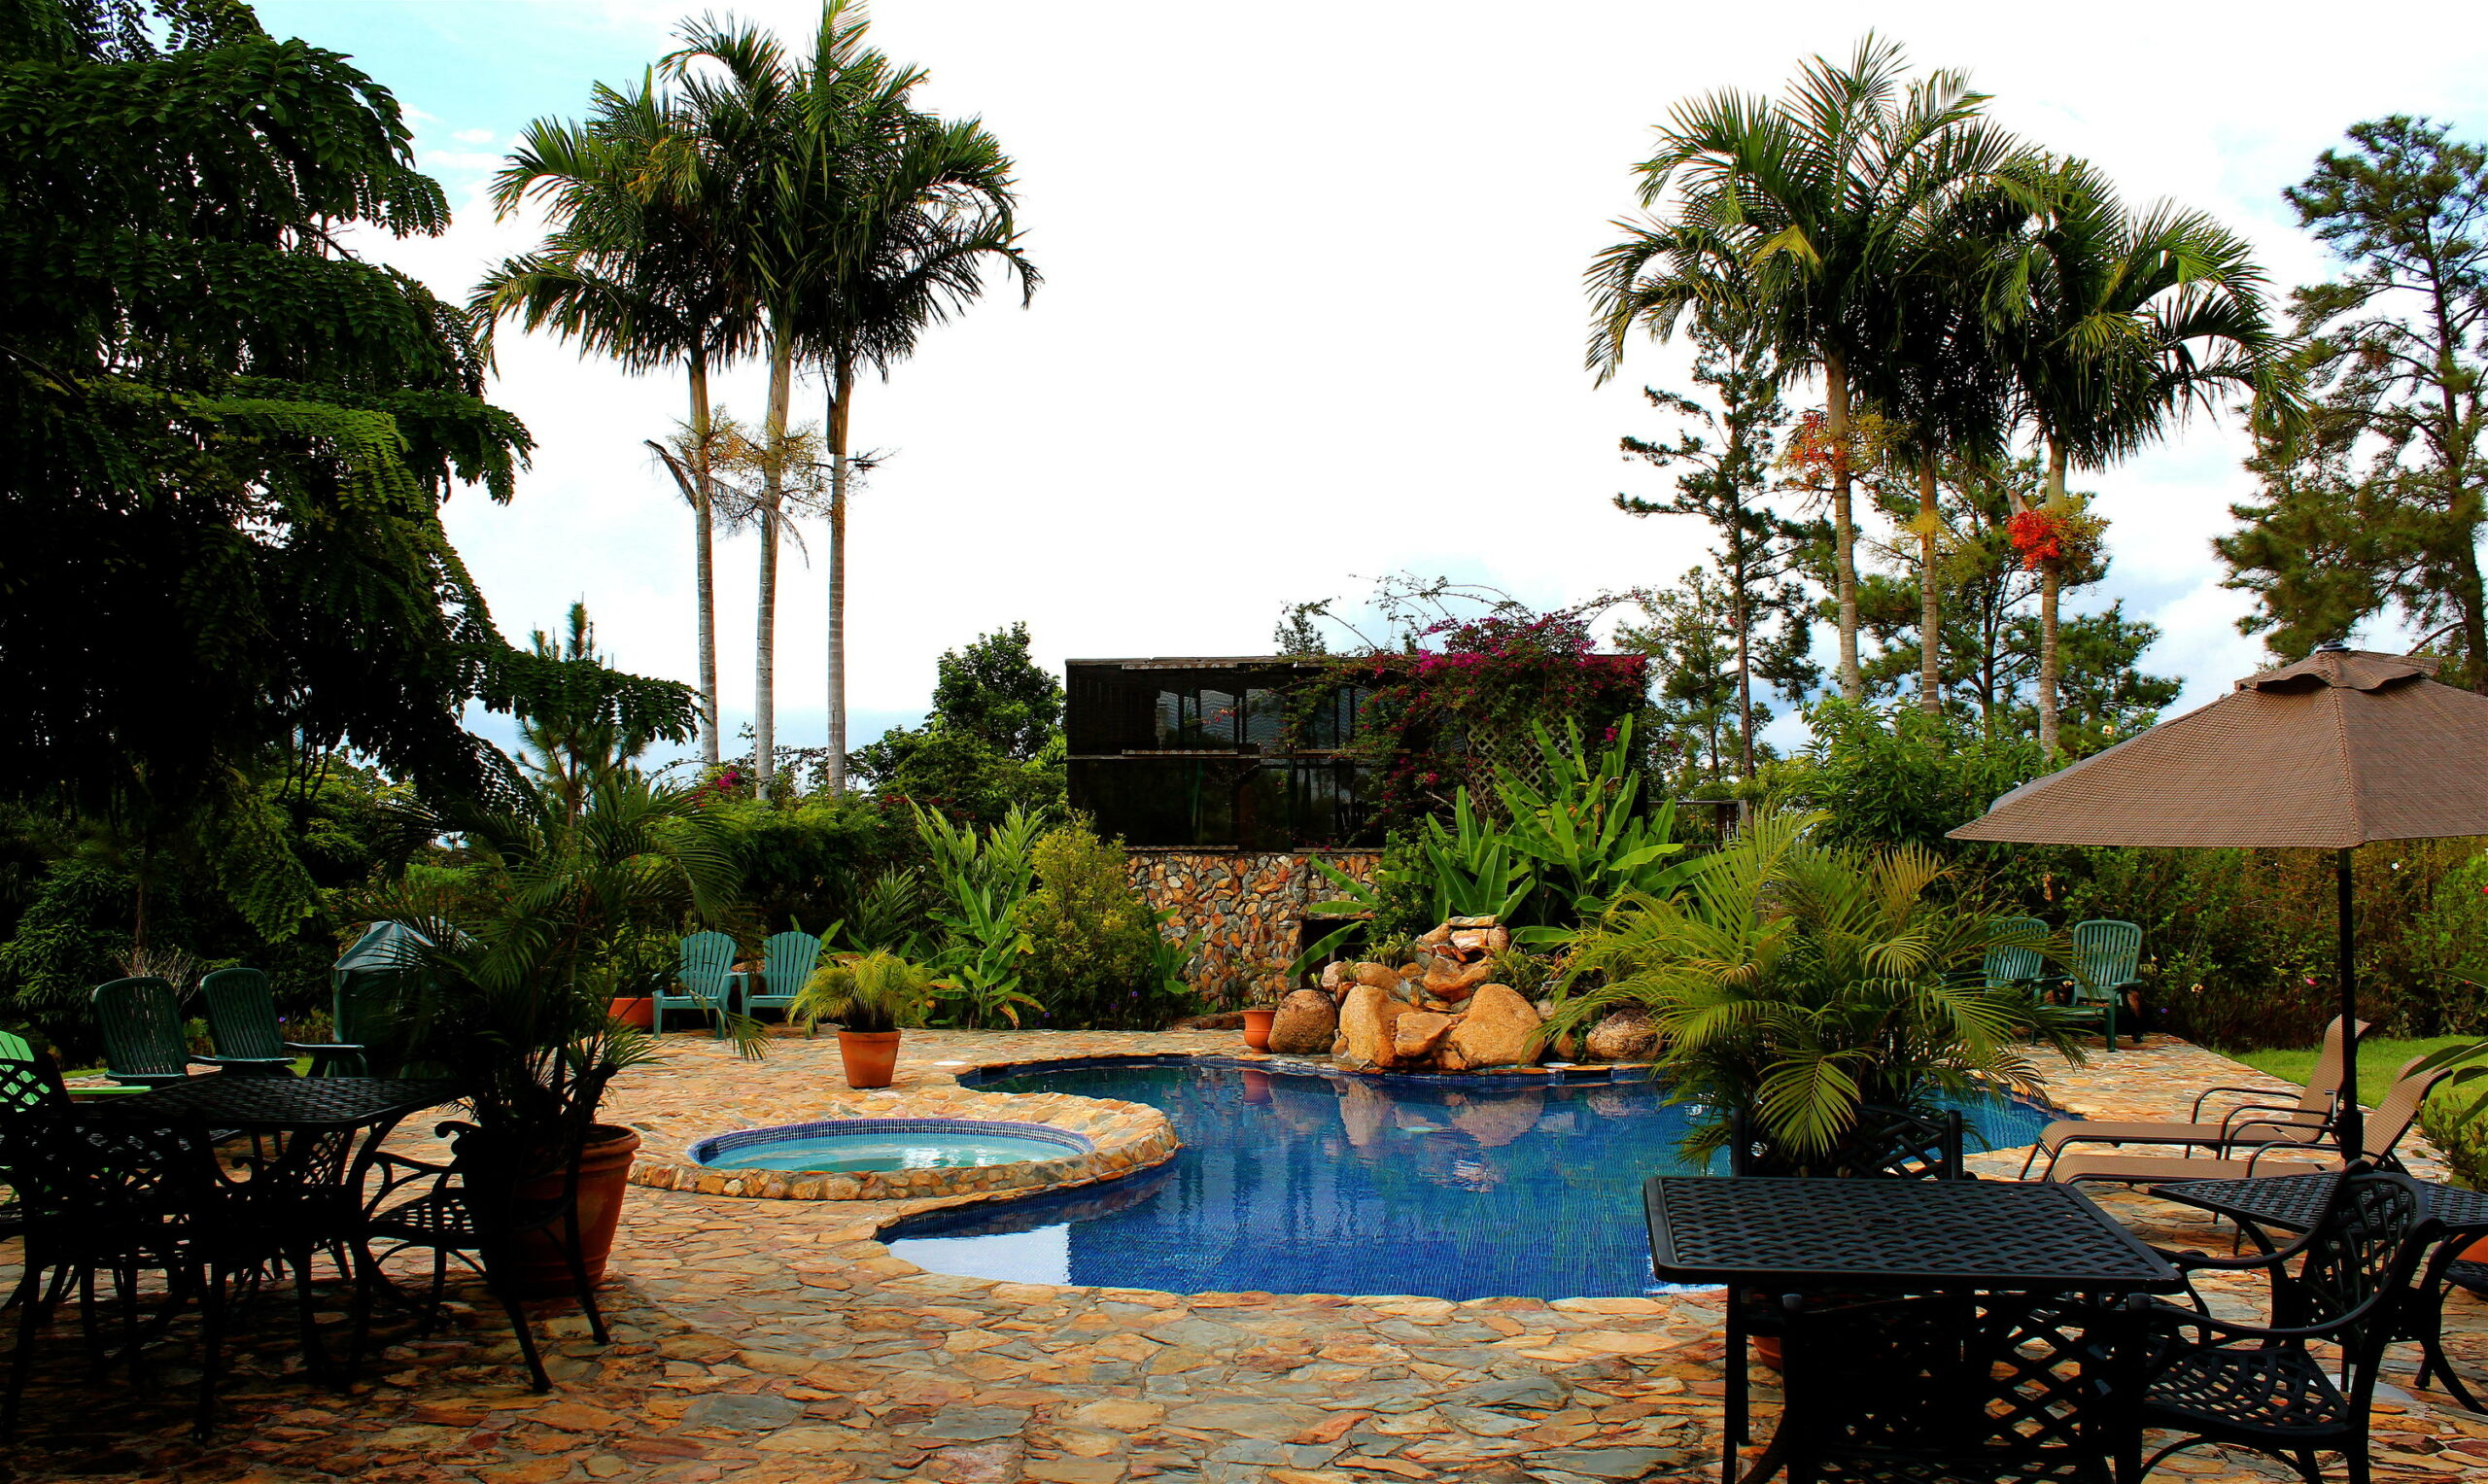 Hidden Valley outdoor pool, Belize